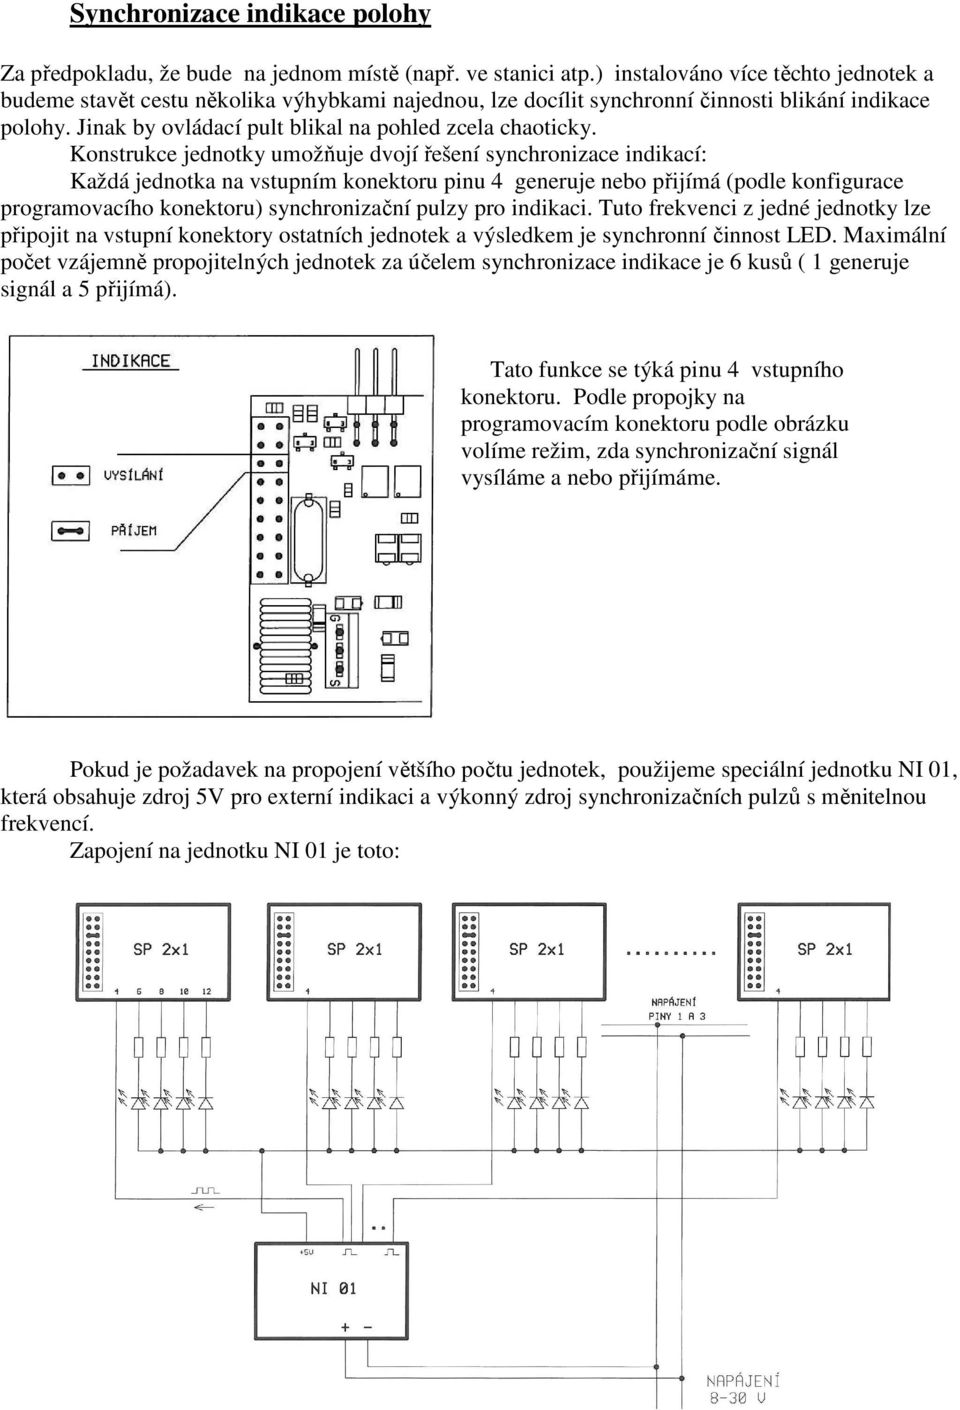 Konstrukce jednotky umožňuje dvojí řešení synchronizace indikací: Každá jednotka na vstupním konektoru pinu 4 generuje nebo přijímá (podle konfigurace programovacího konektoru) synchronizační pulzy